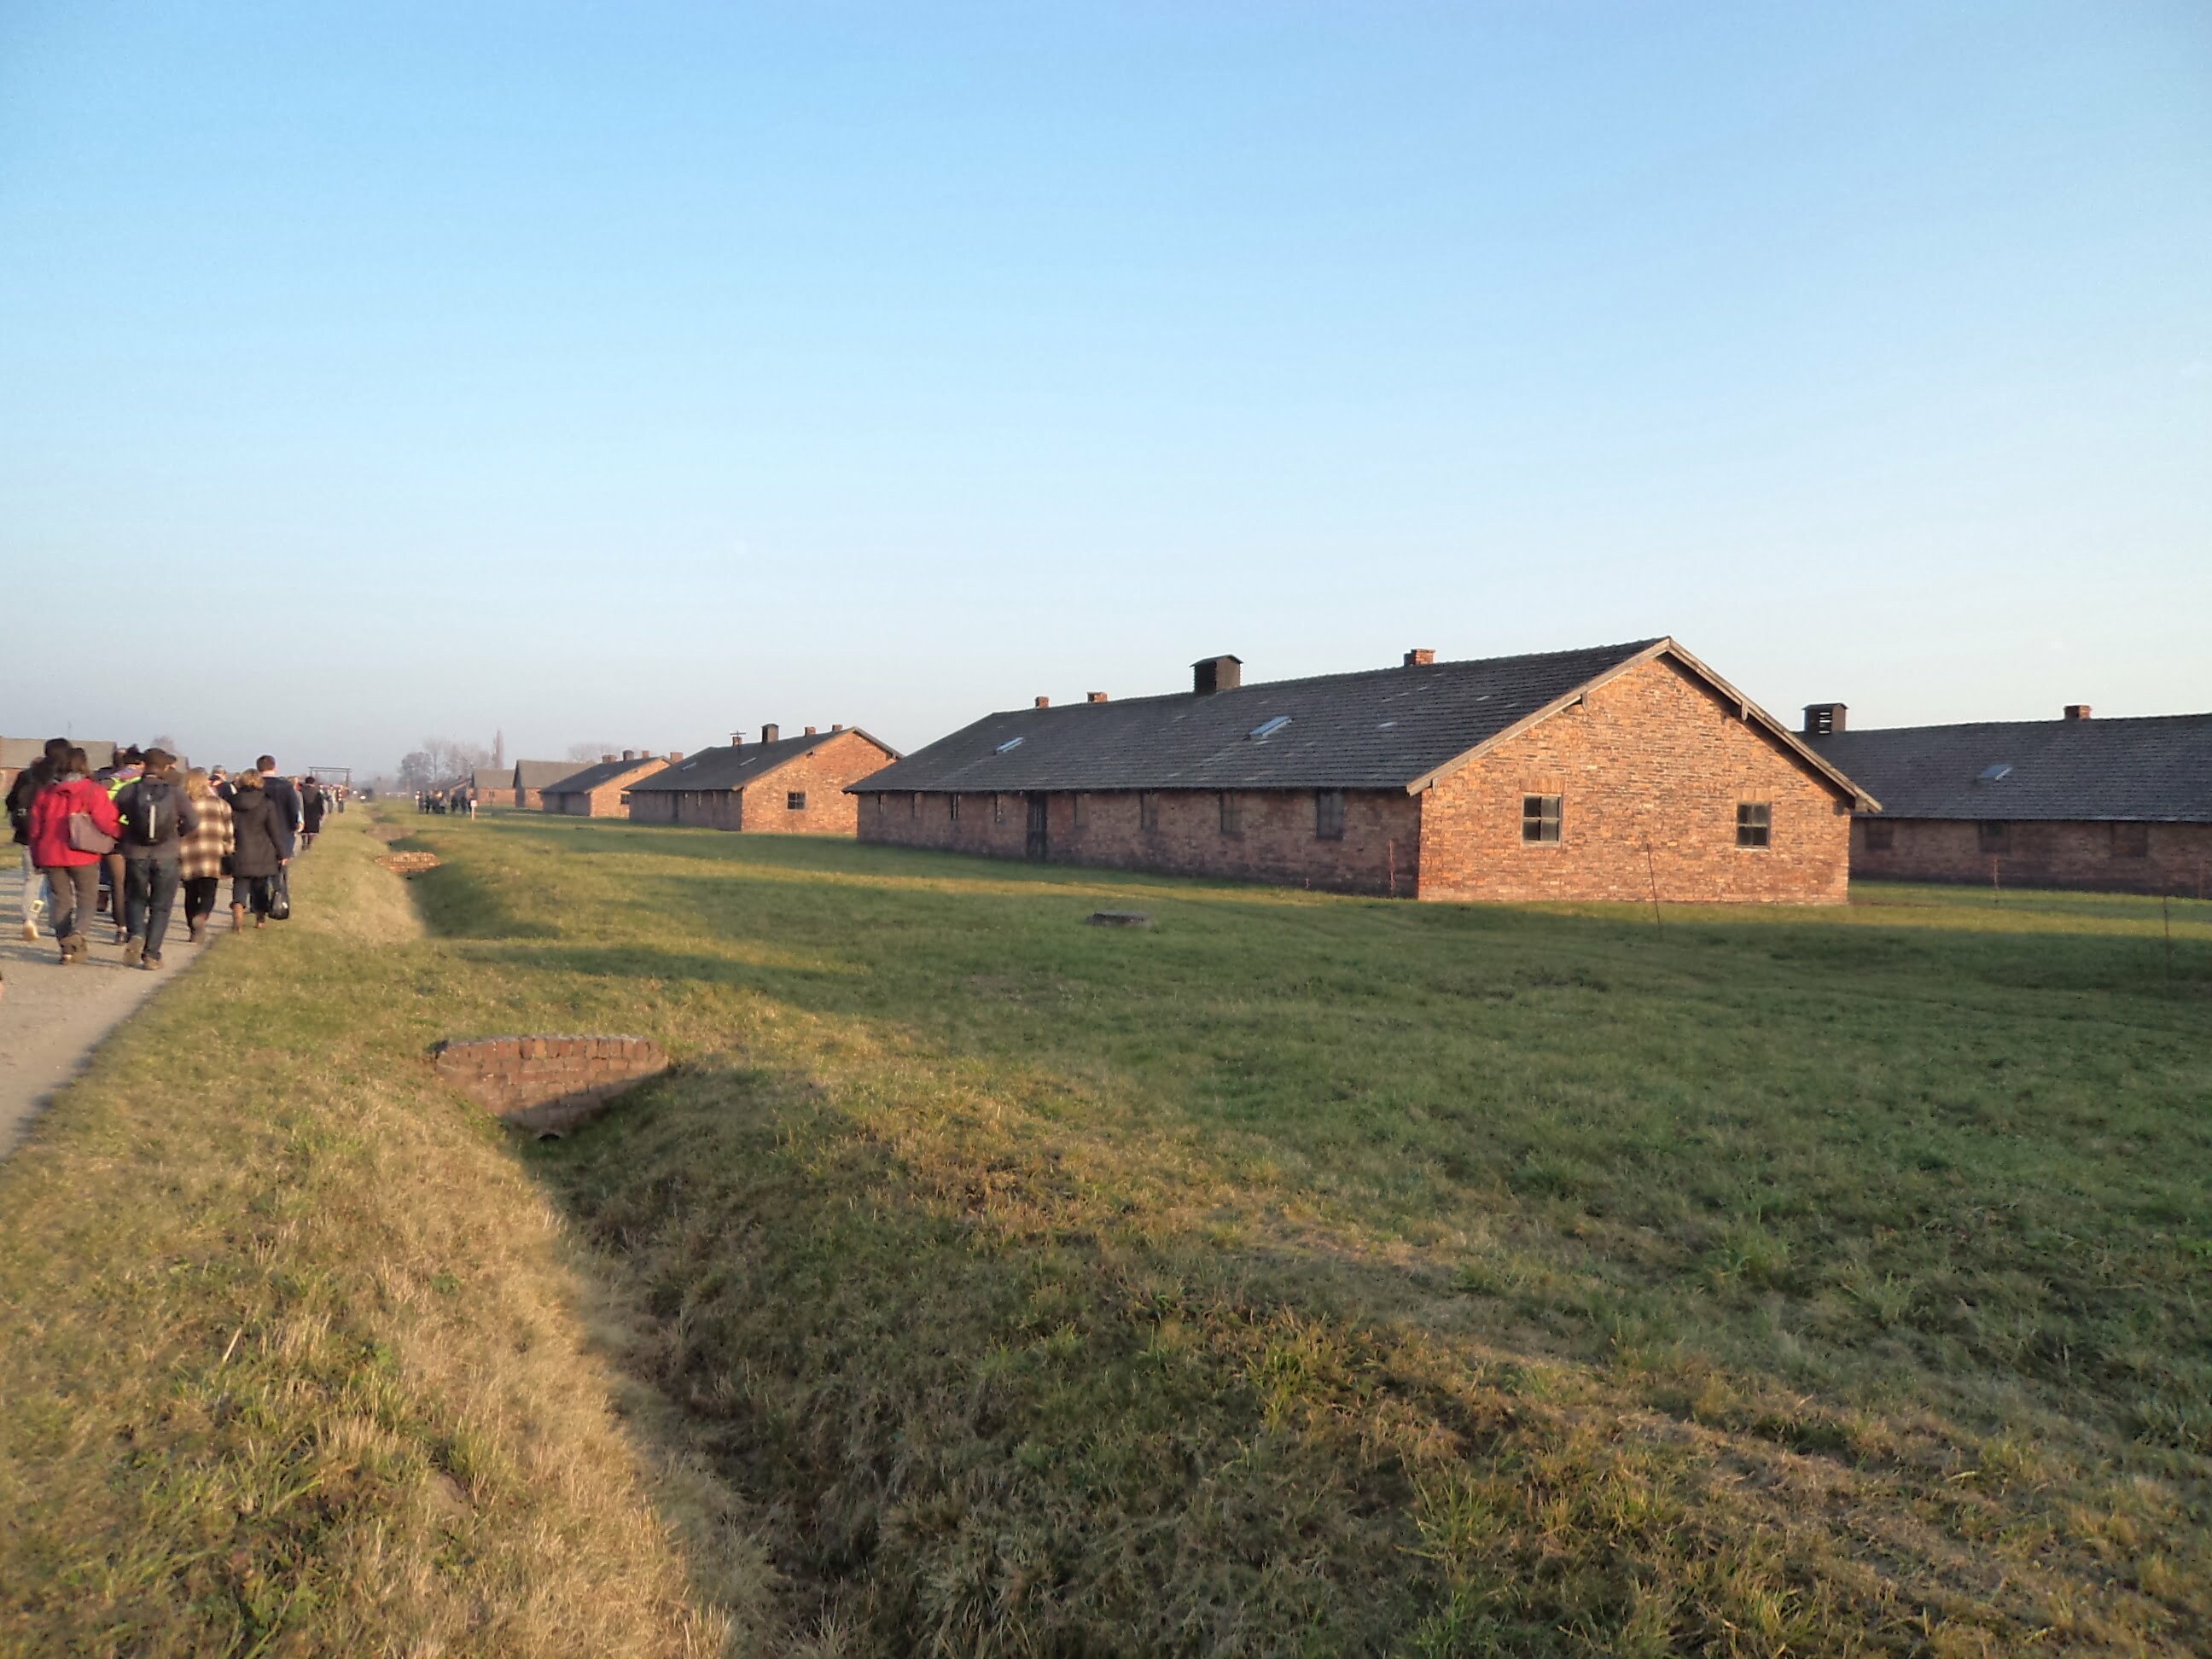 Barracões do Campo de Concentração Nazista em Auschiwitz, Polônia